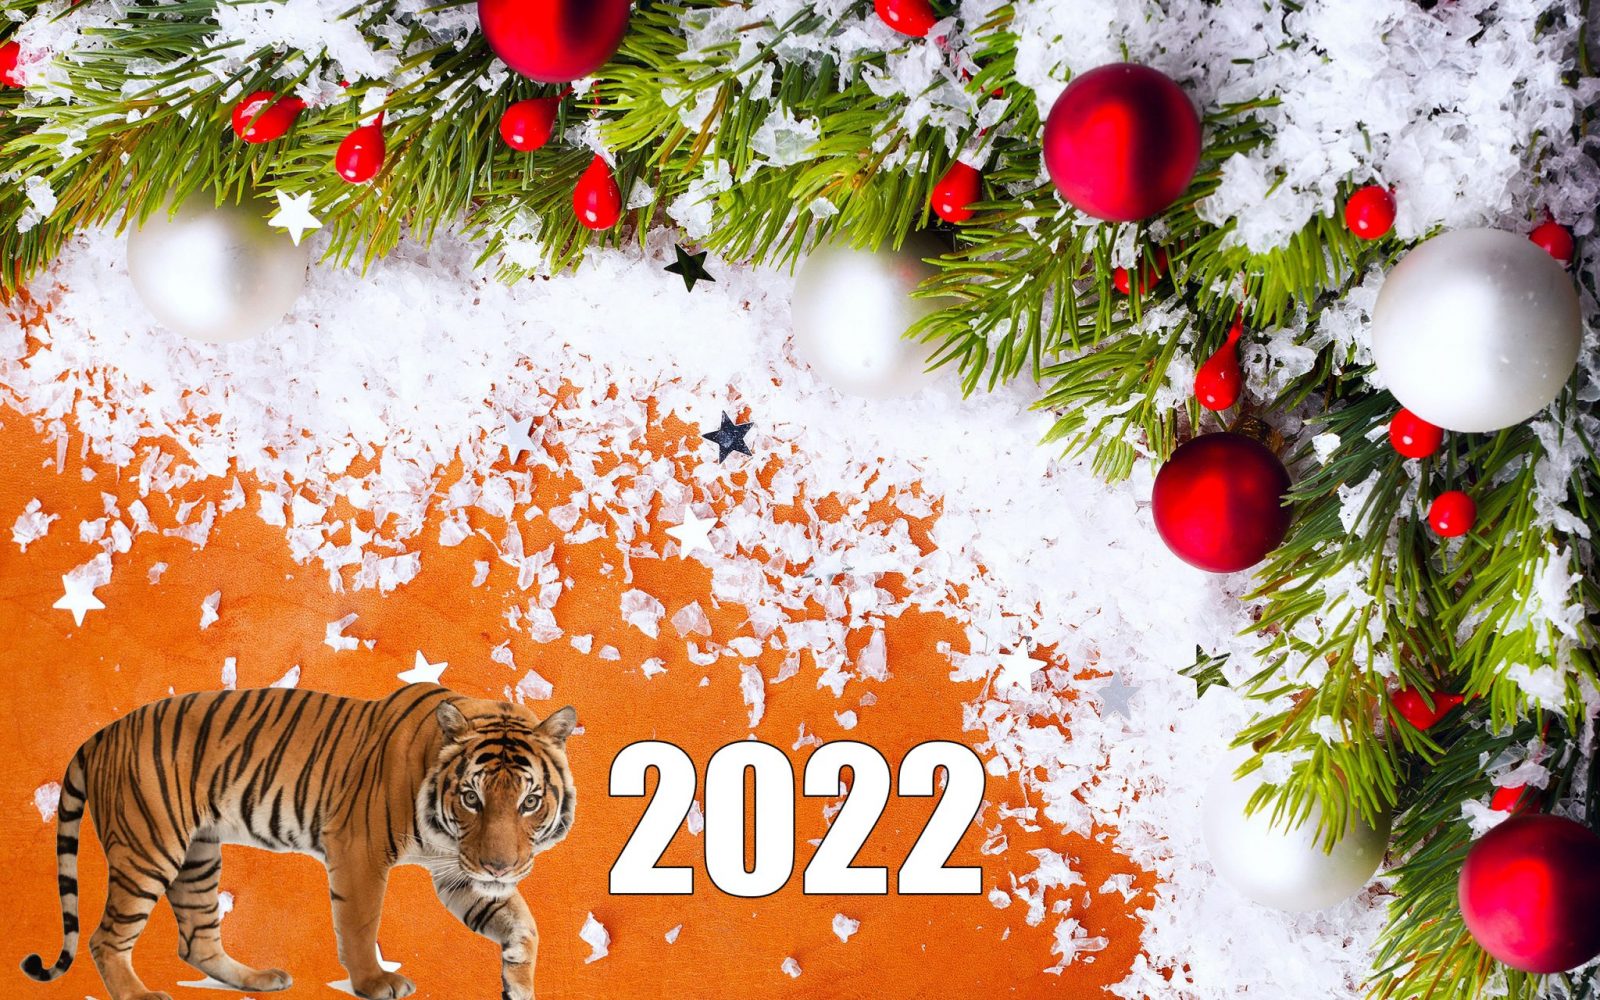 Капуки Кануки Новый Год 2022